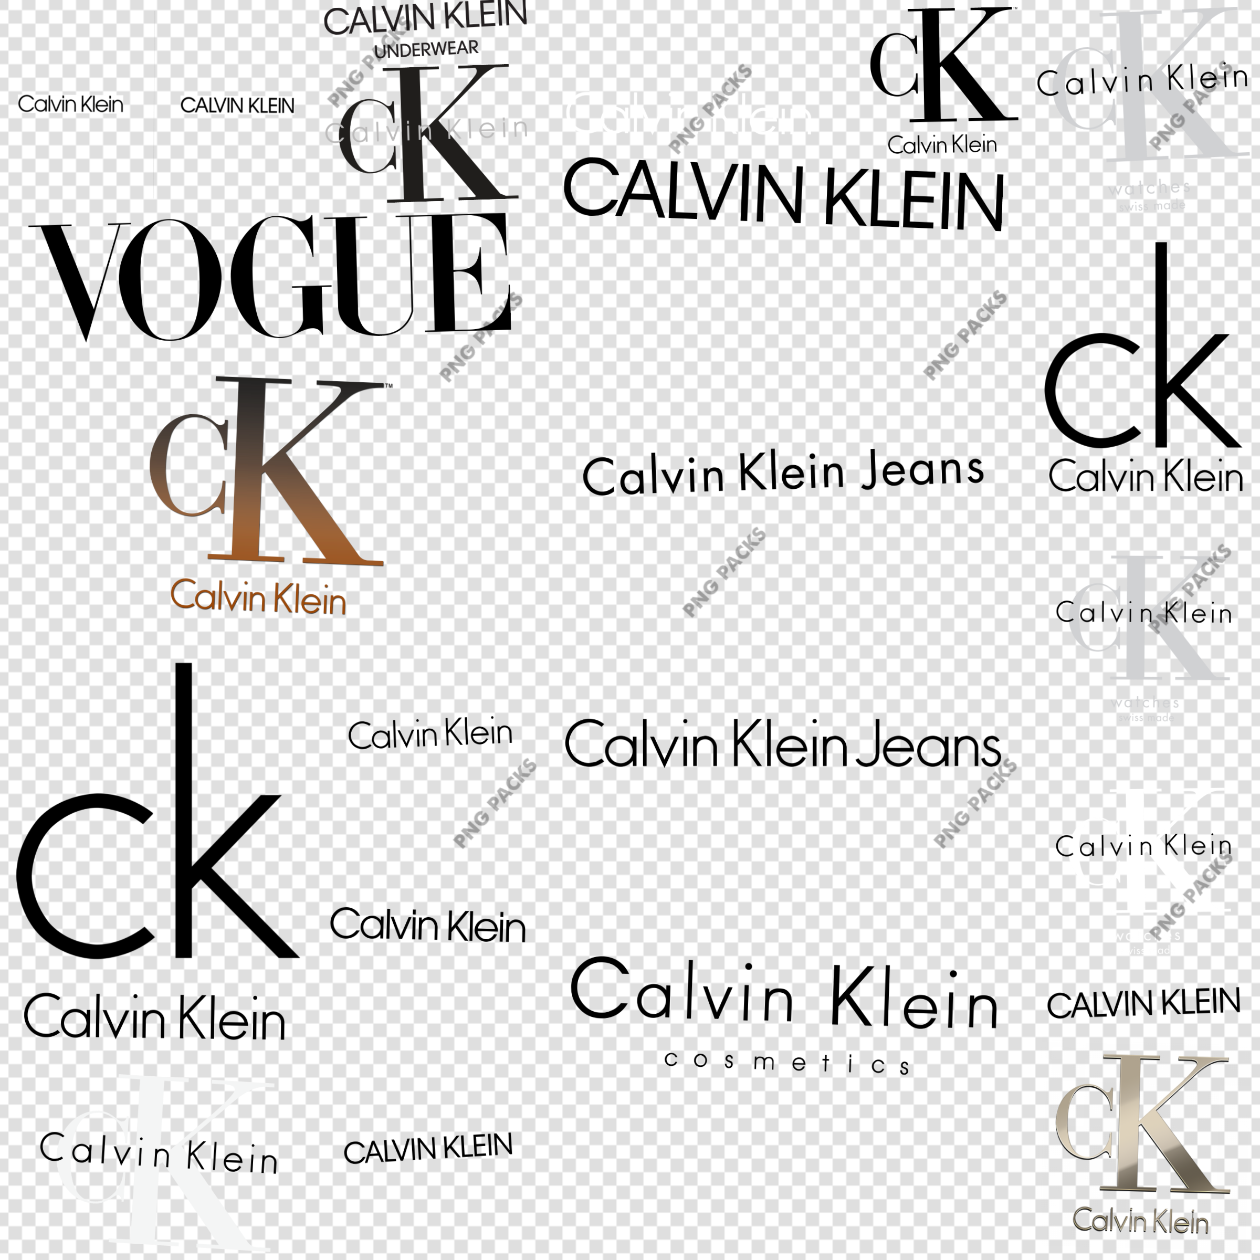 Calvin Klein Logo PNG Images Free Download | vlr.eng.br